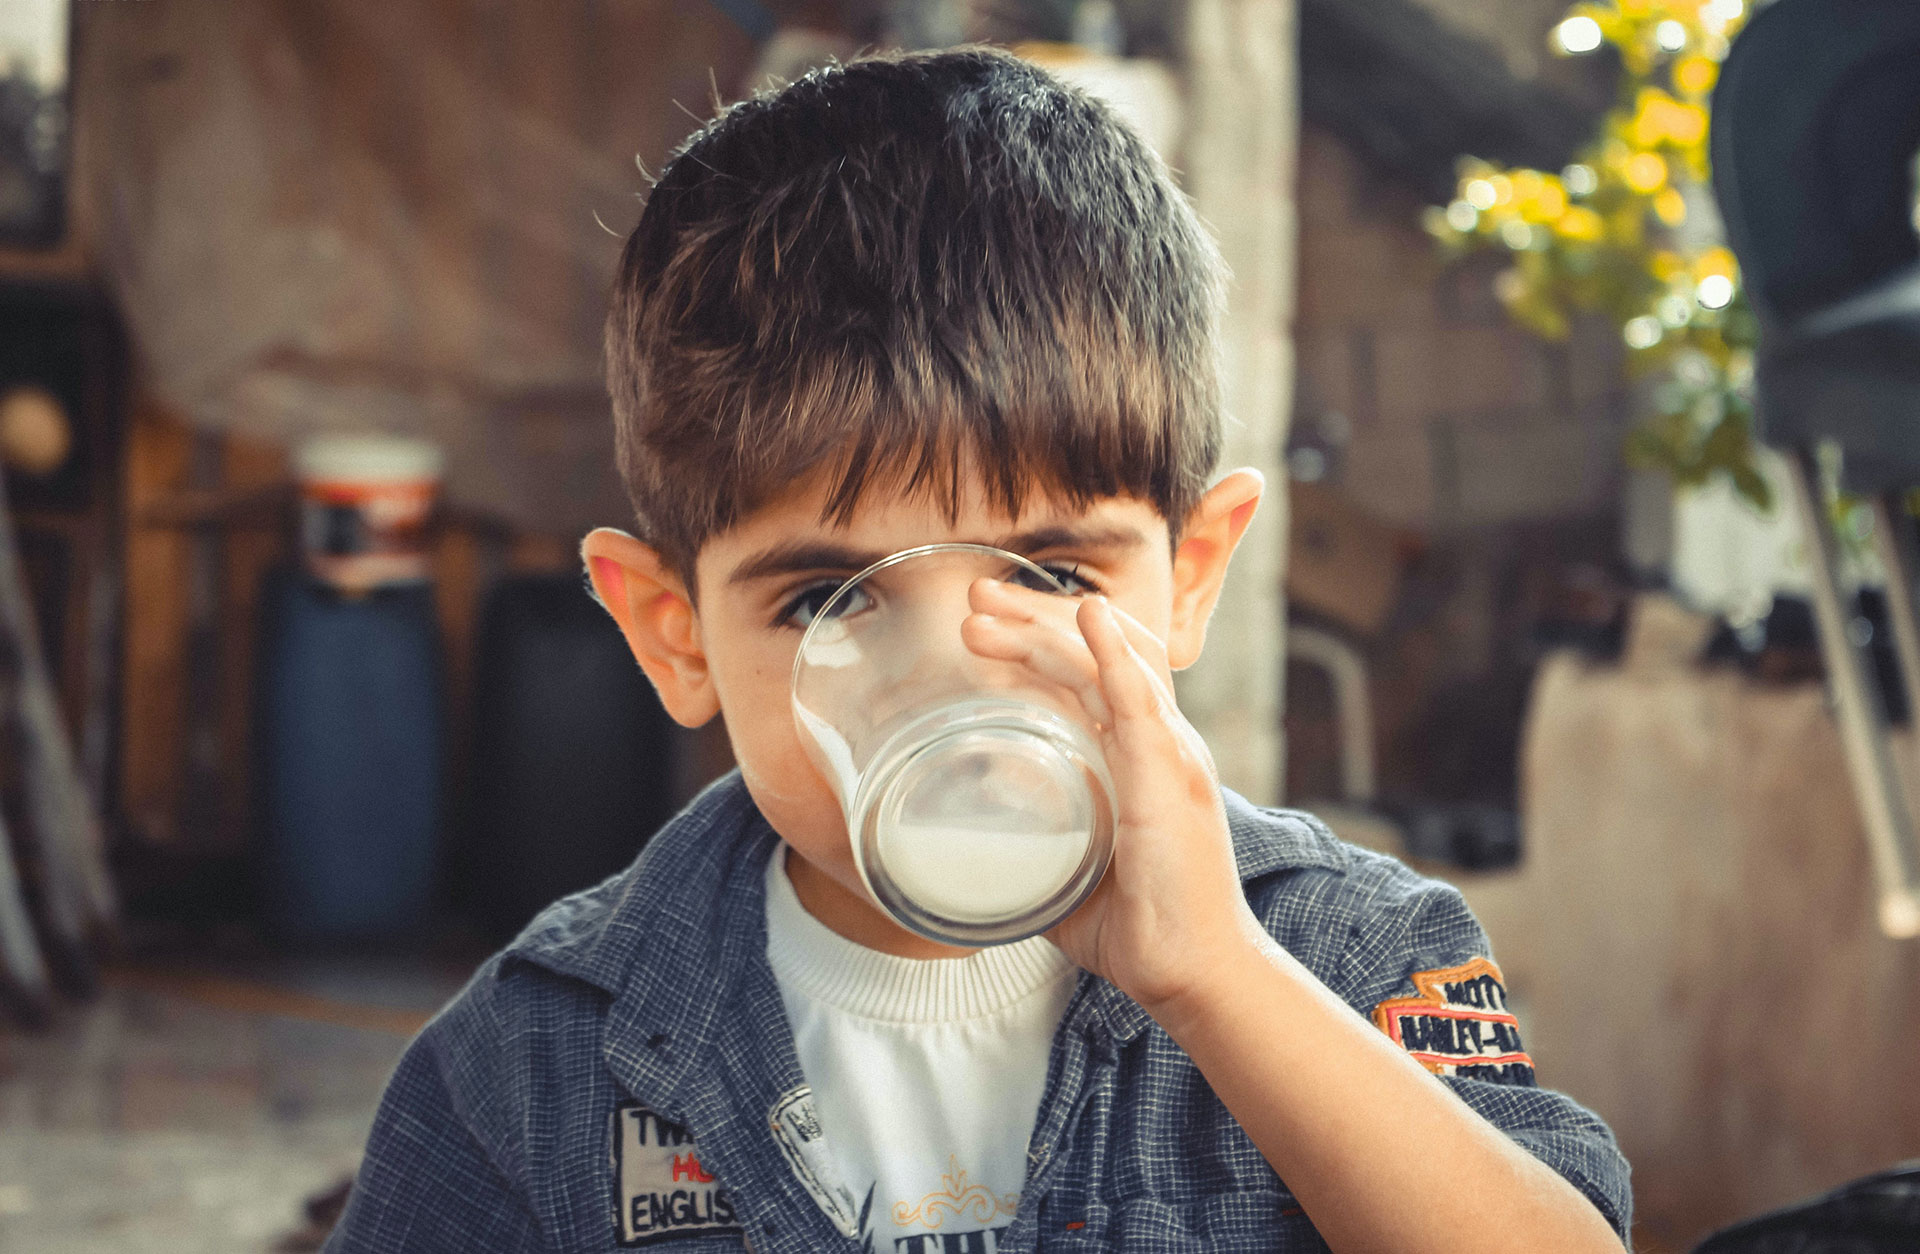 Leche siempre: la importancia de los lácteos en la niñez